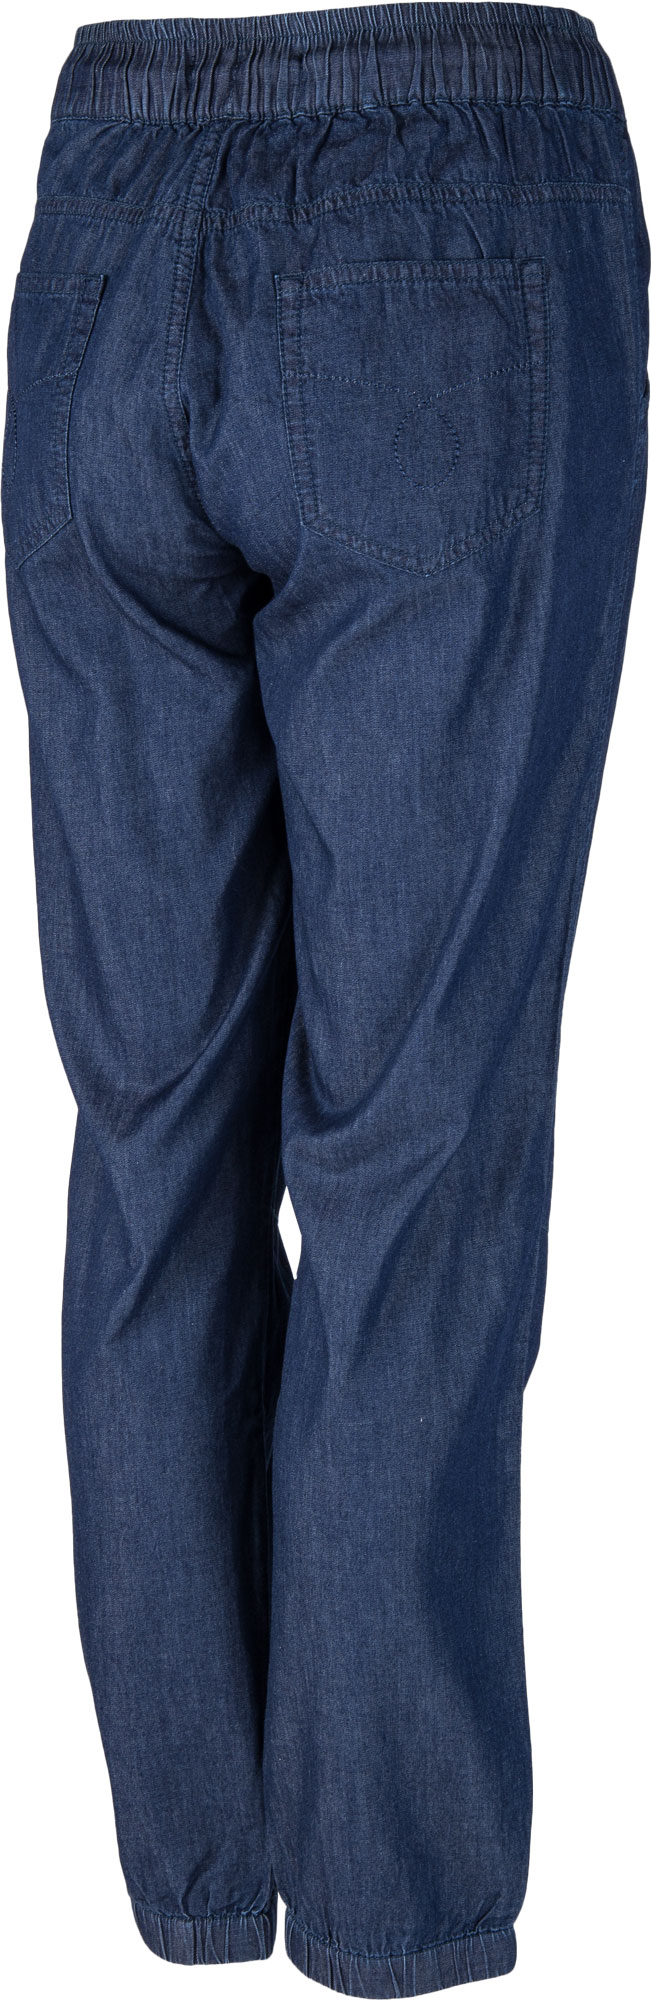 Pantaloni de trening damă cu aspect de blugi